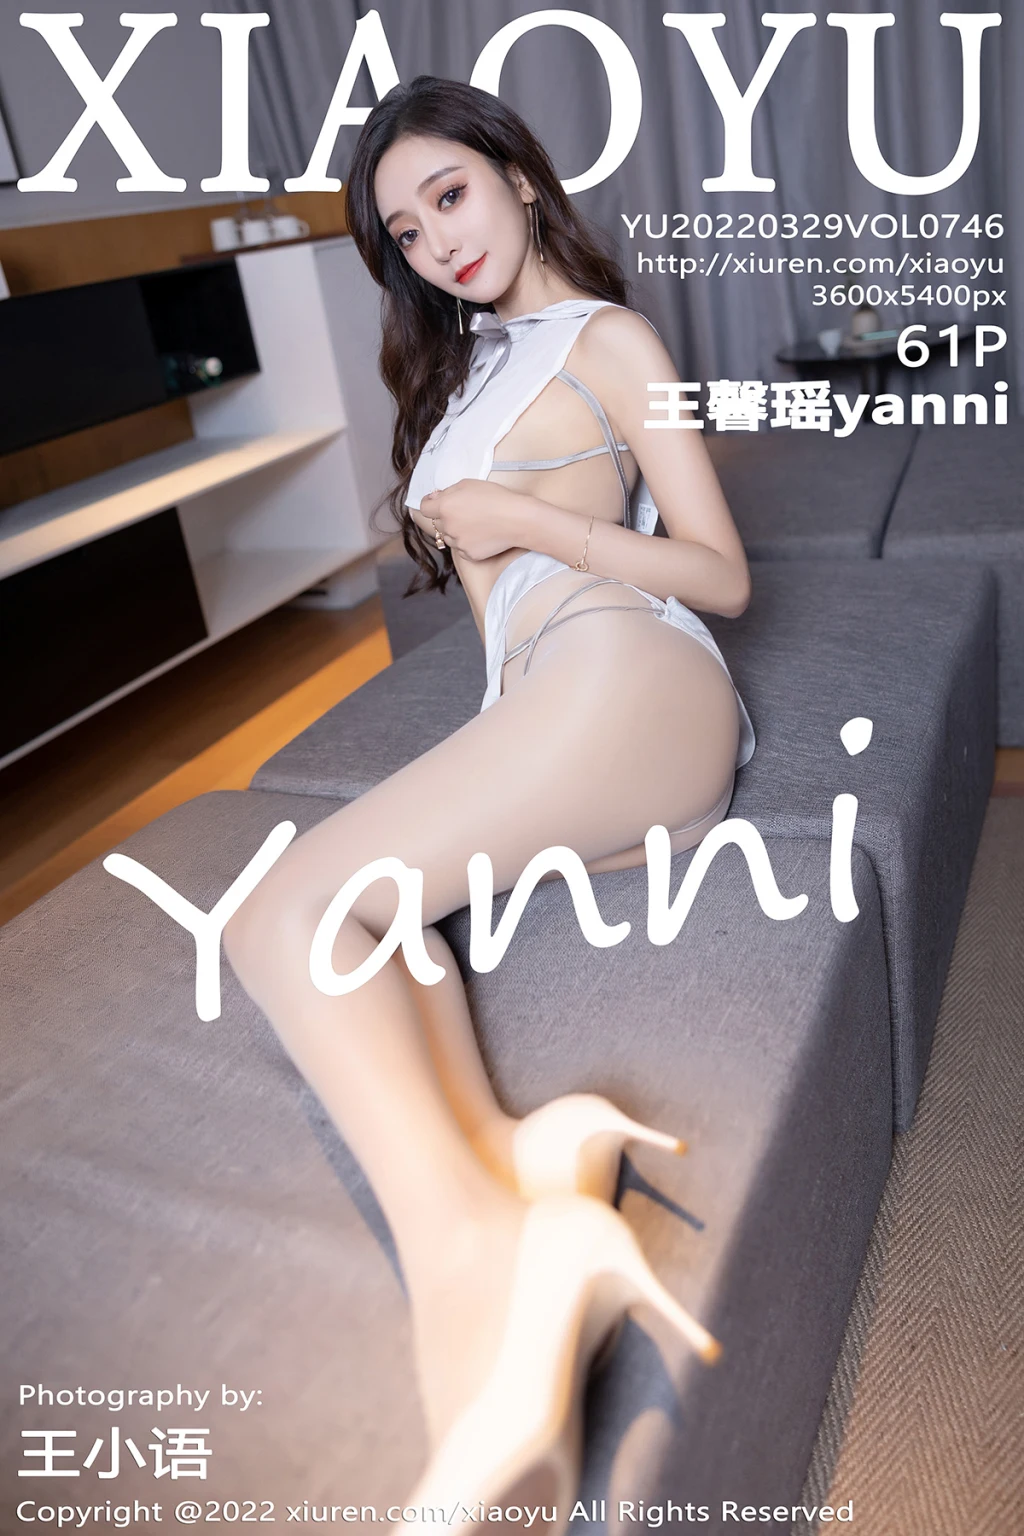 XiaoYu Vol.746: Yanniimage No.33